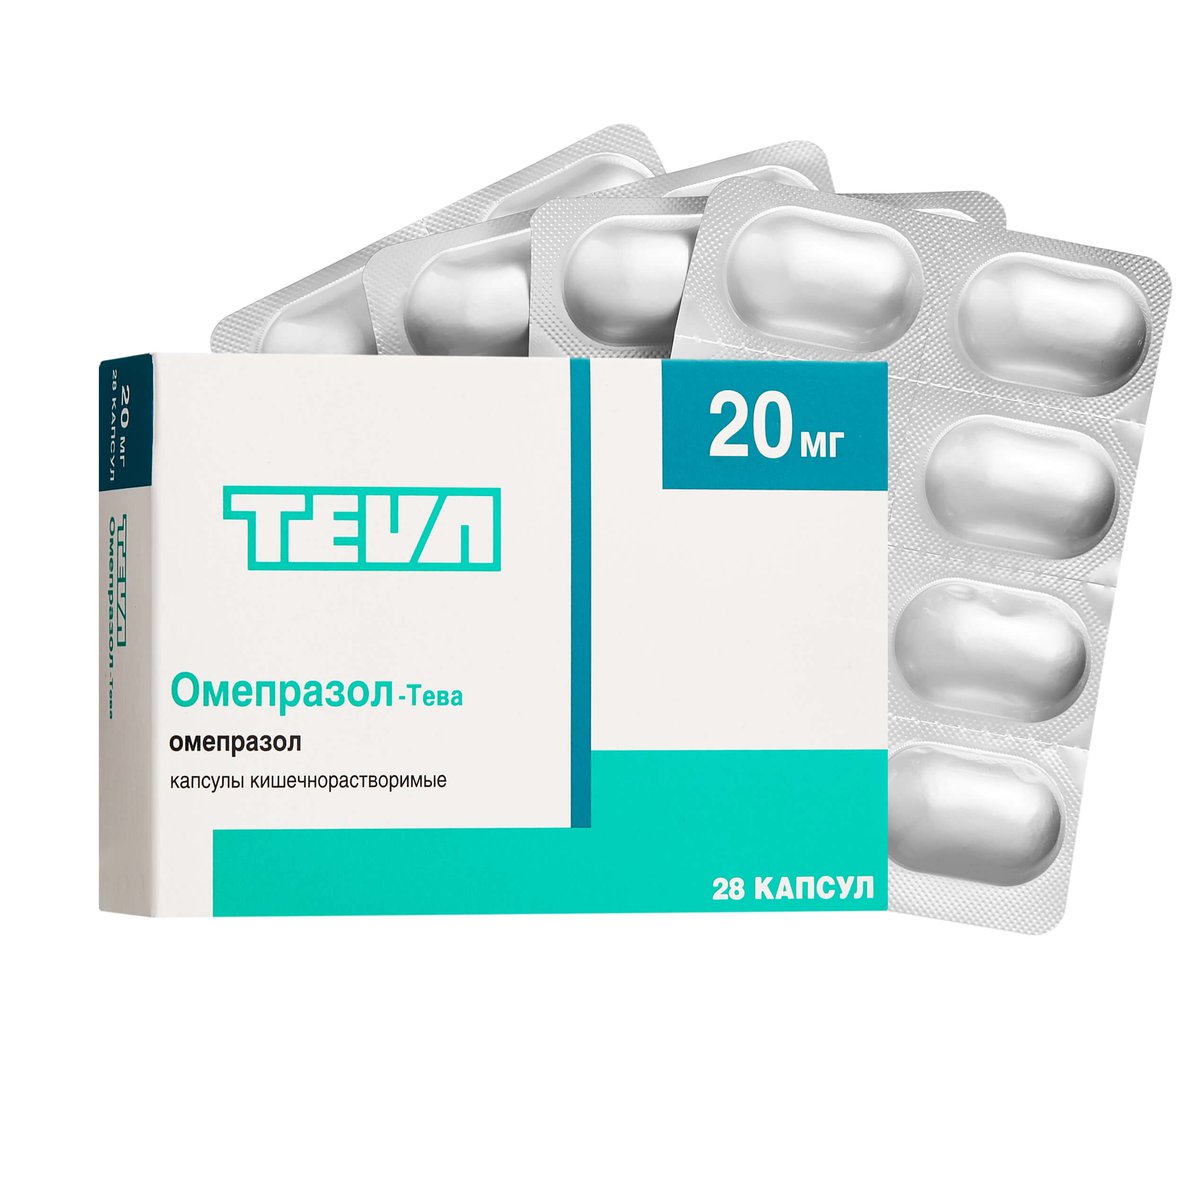 Омепразол-Тева (капсулы, 28 шт, 20 мг) - цена,  онлайн  .